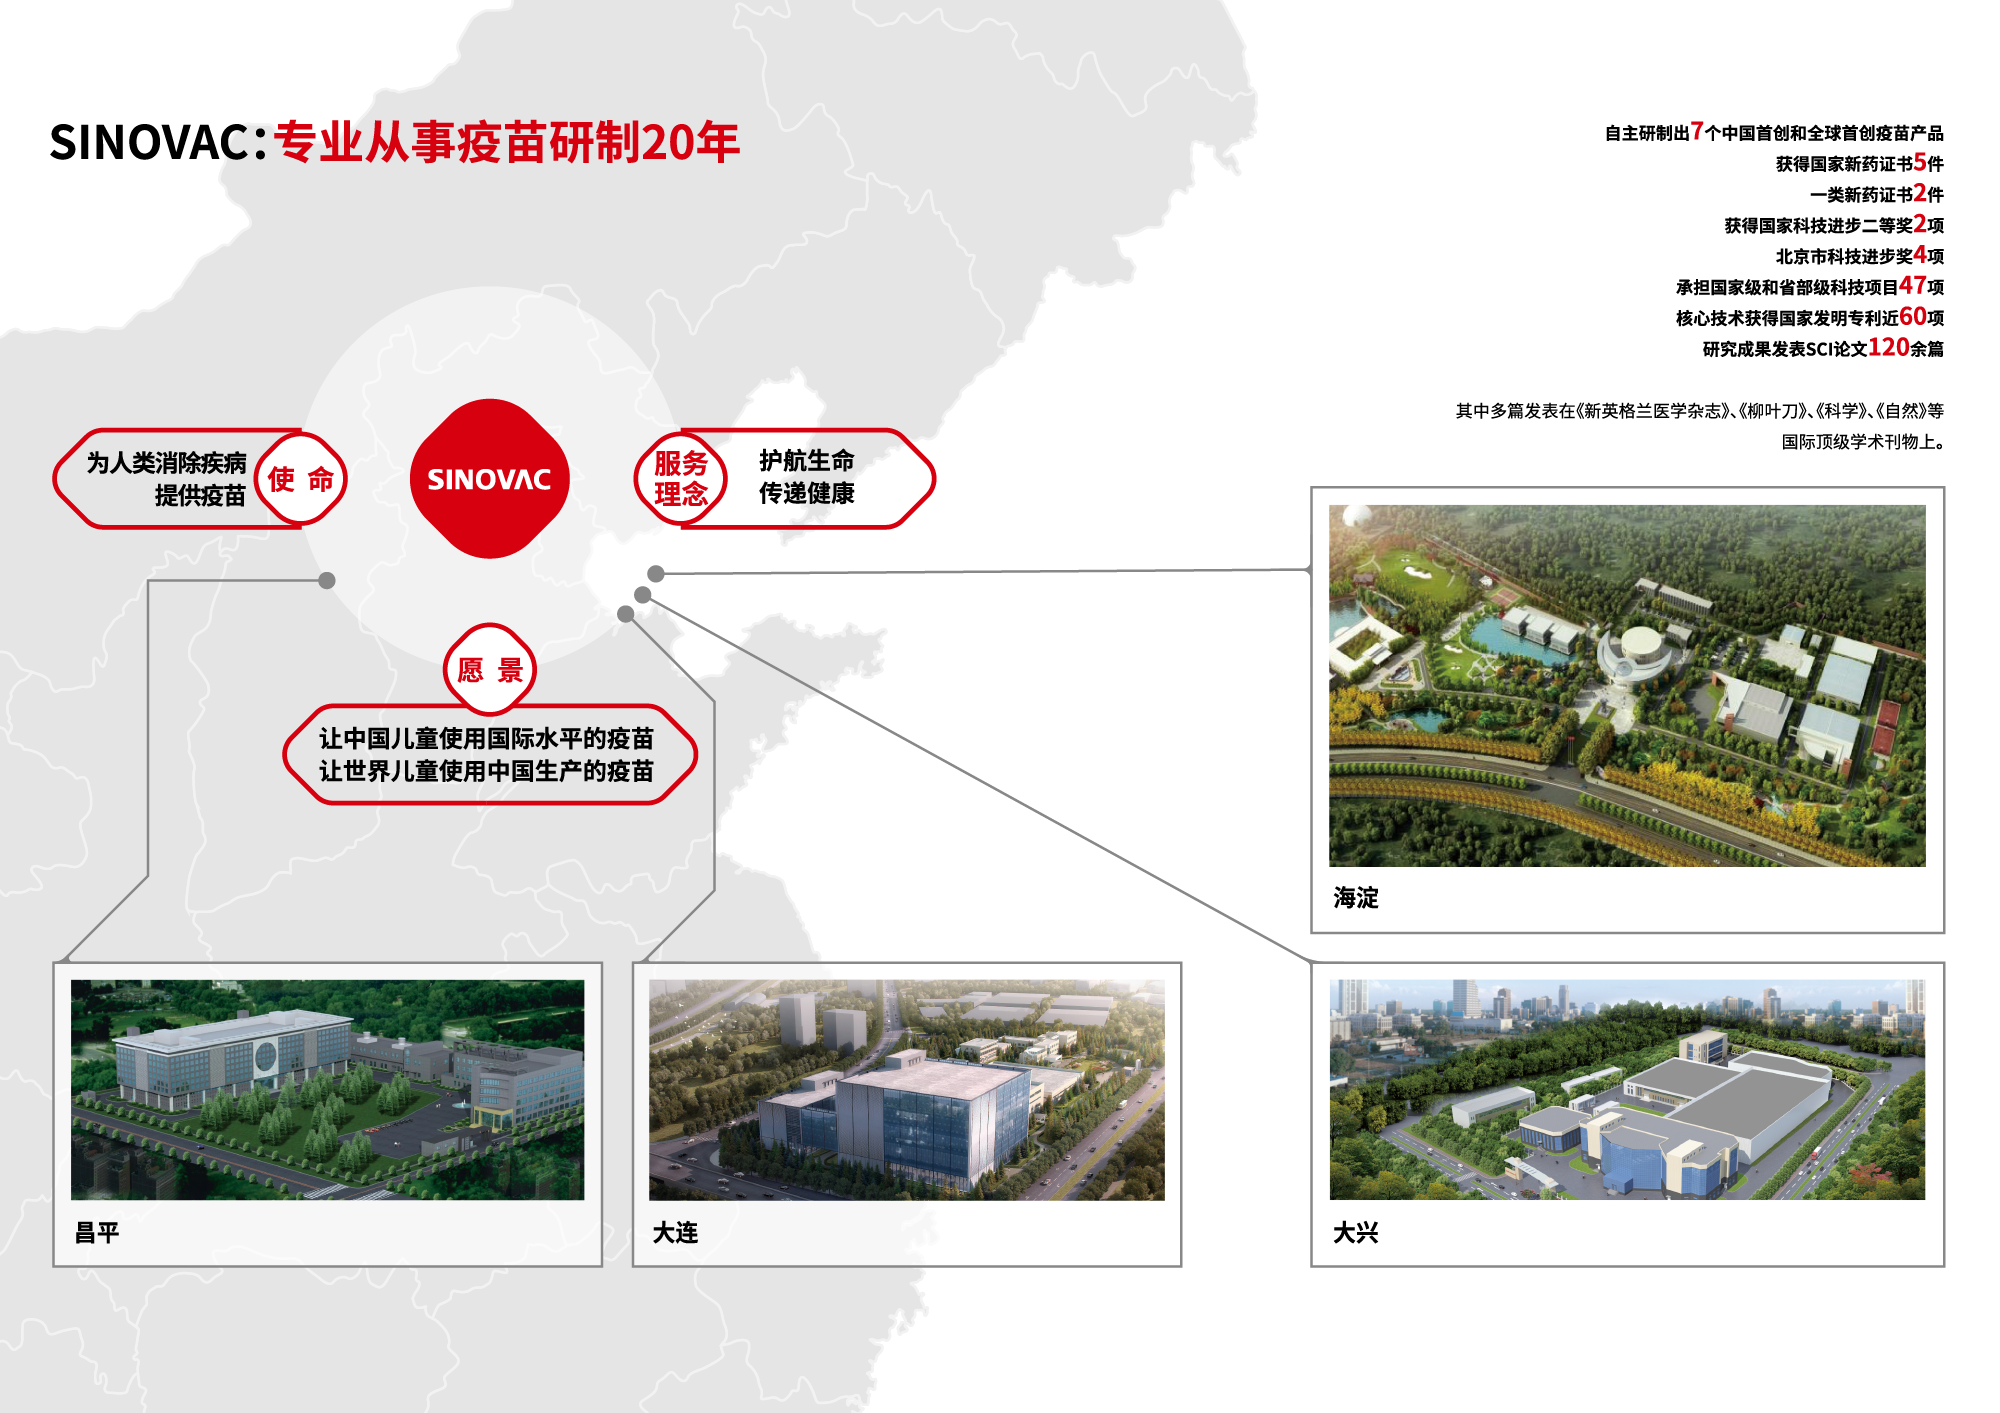 科兴控股生物技术有限公司是一家总部位于北京的生物高新技术企业，图片来自科兴公司网站。